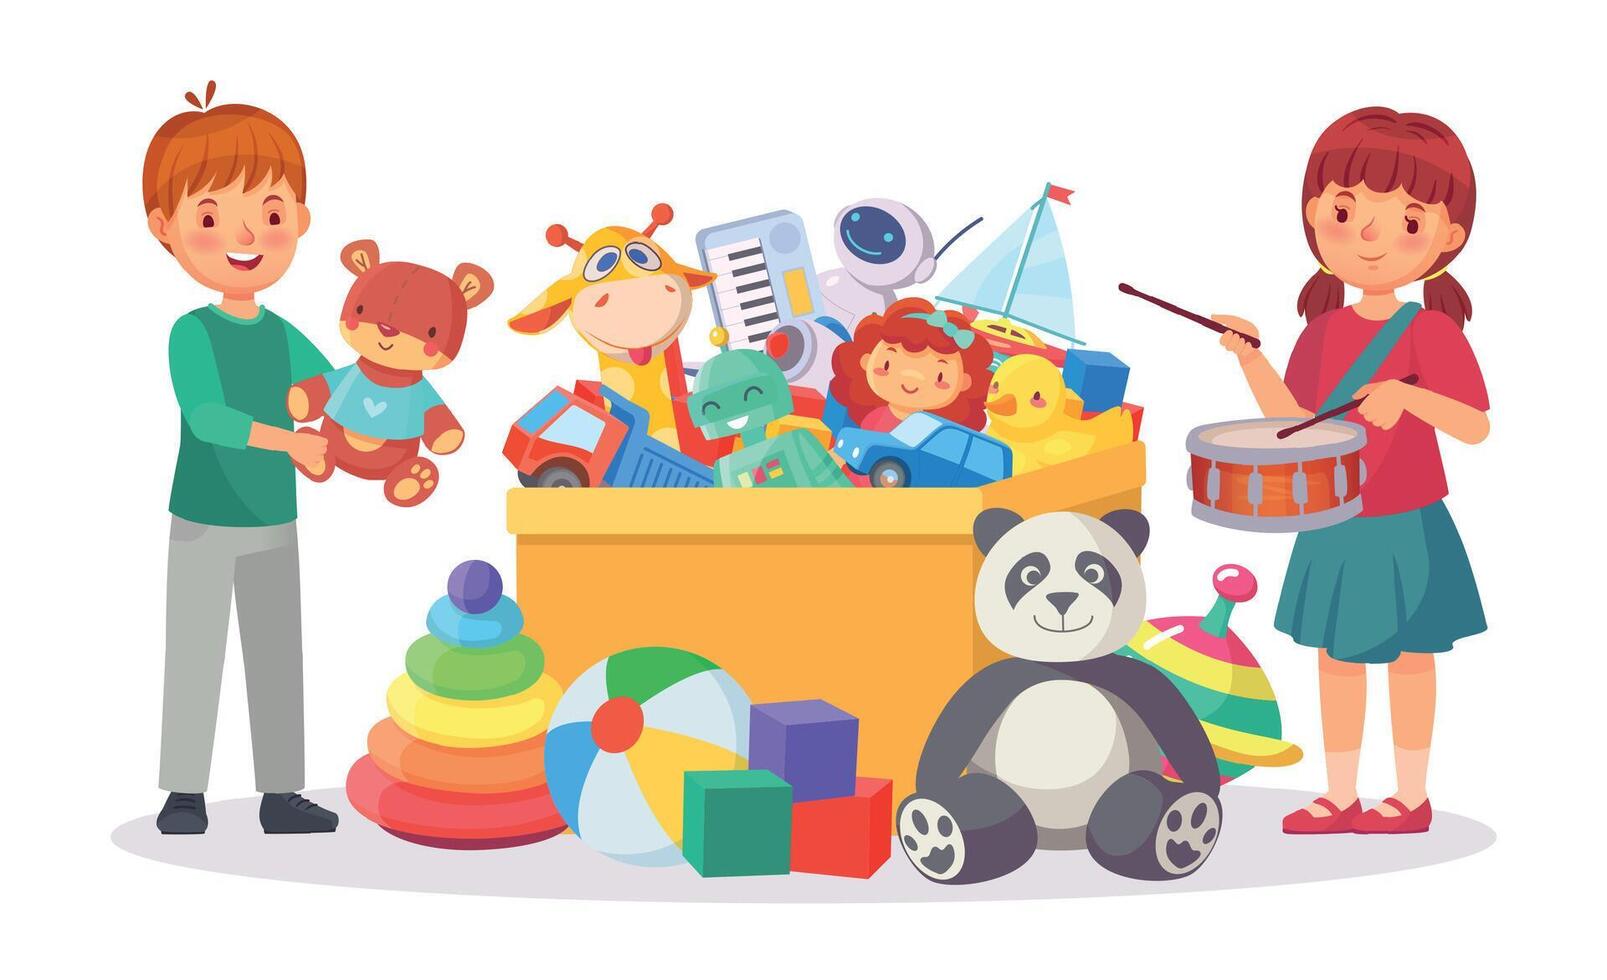 vrolijk kinderen spelen met speelgoed in doos samen vector